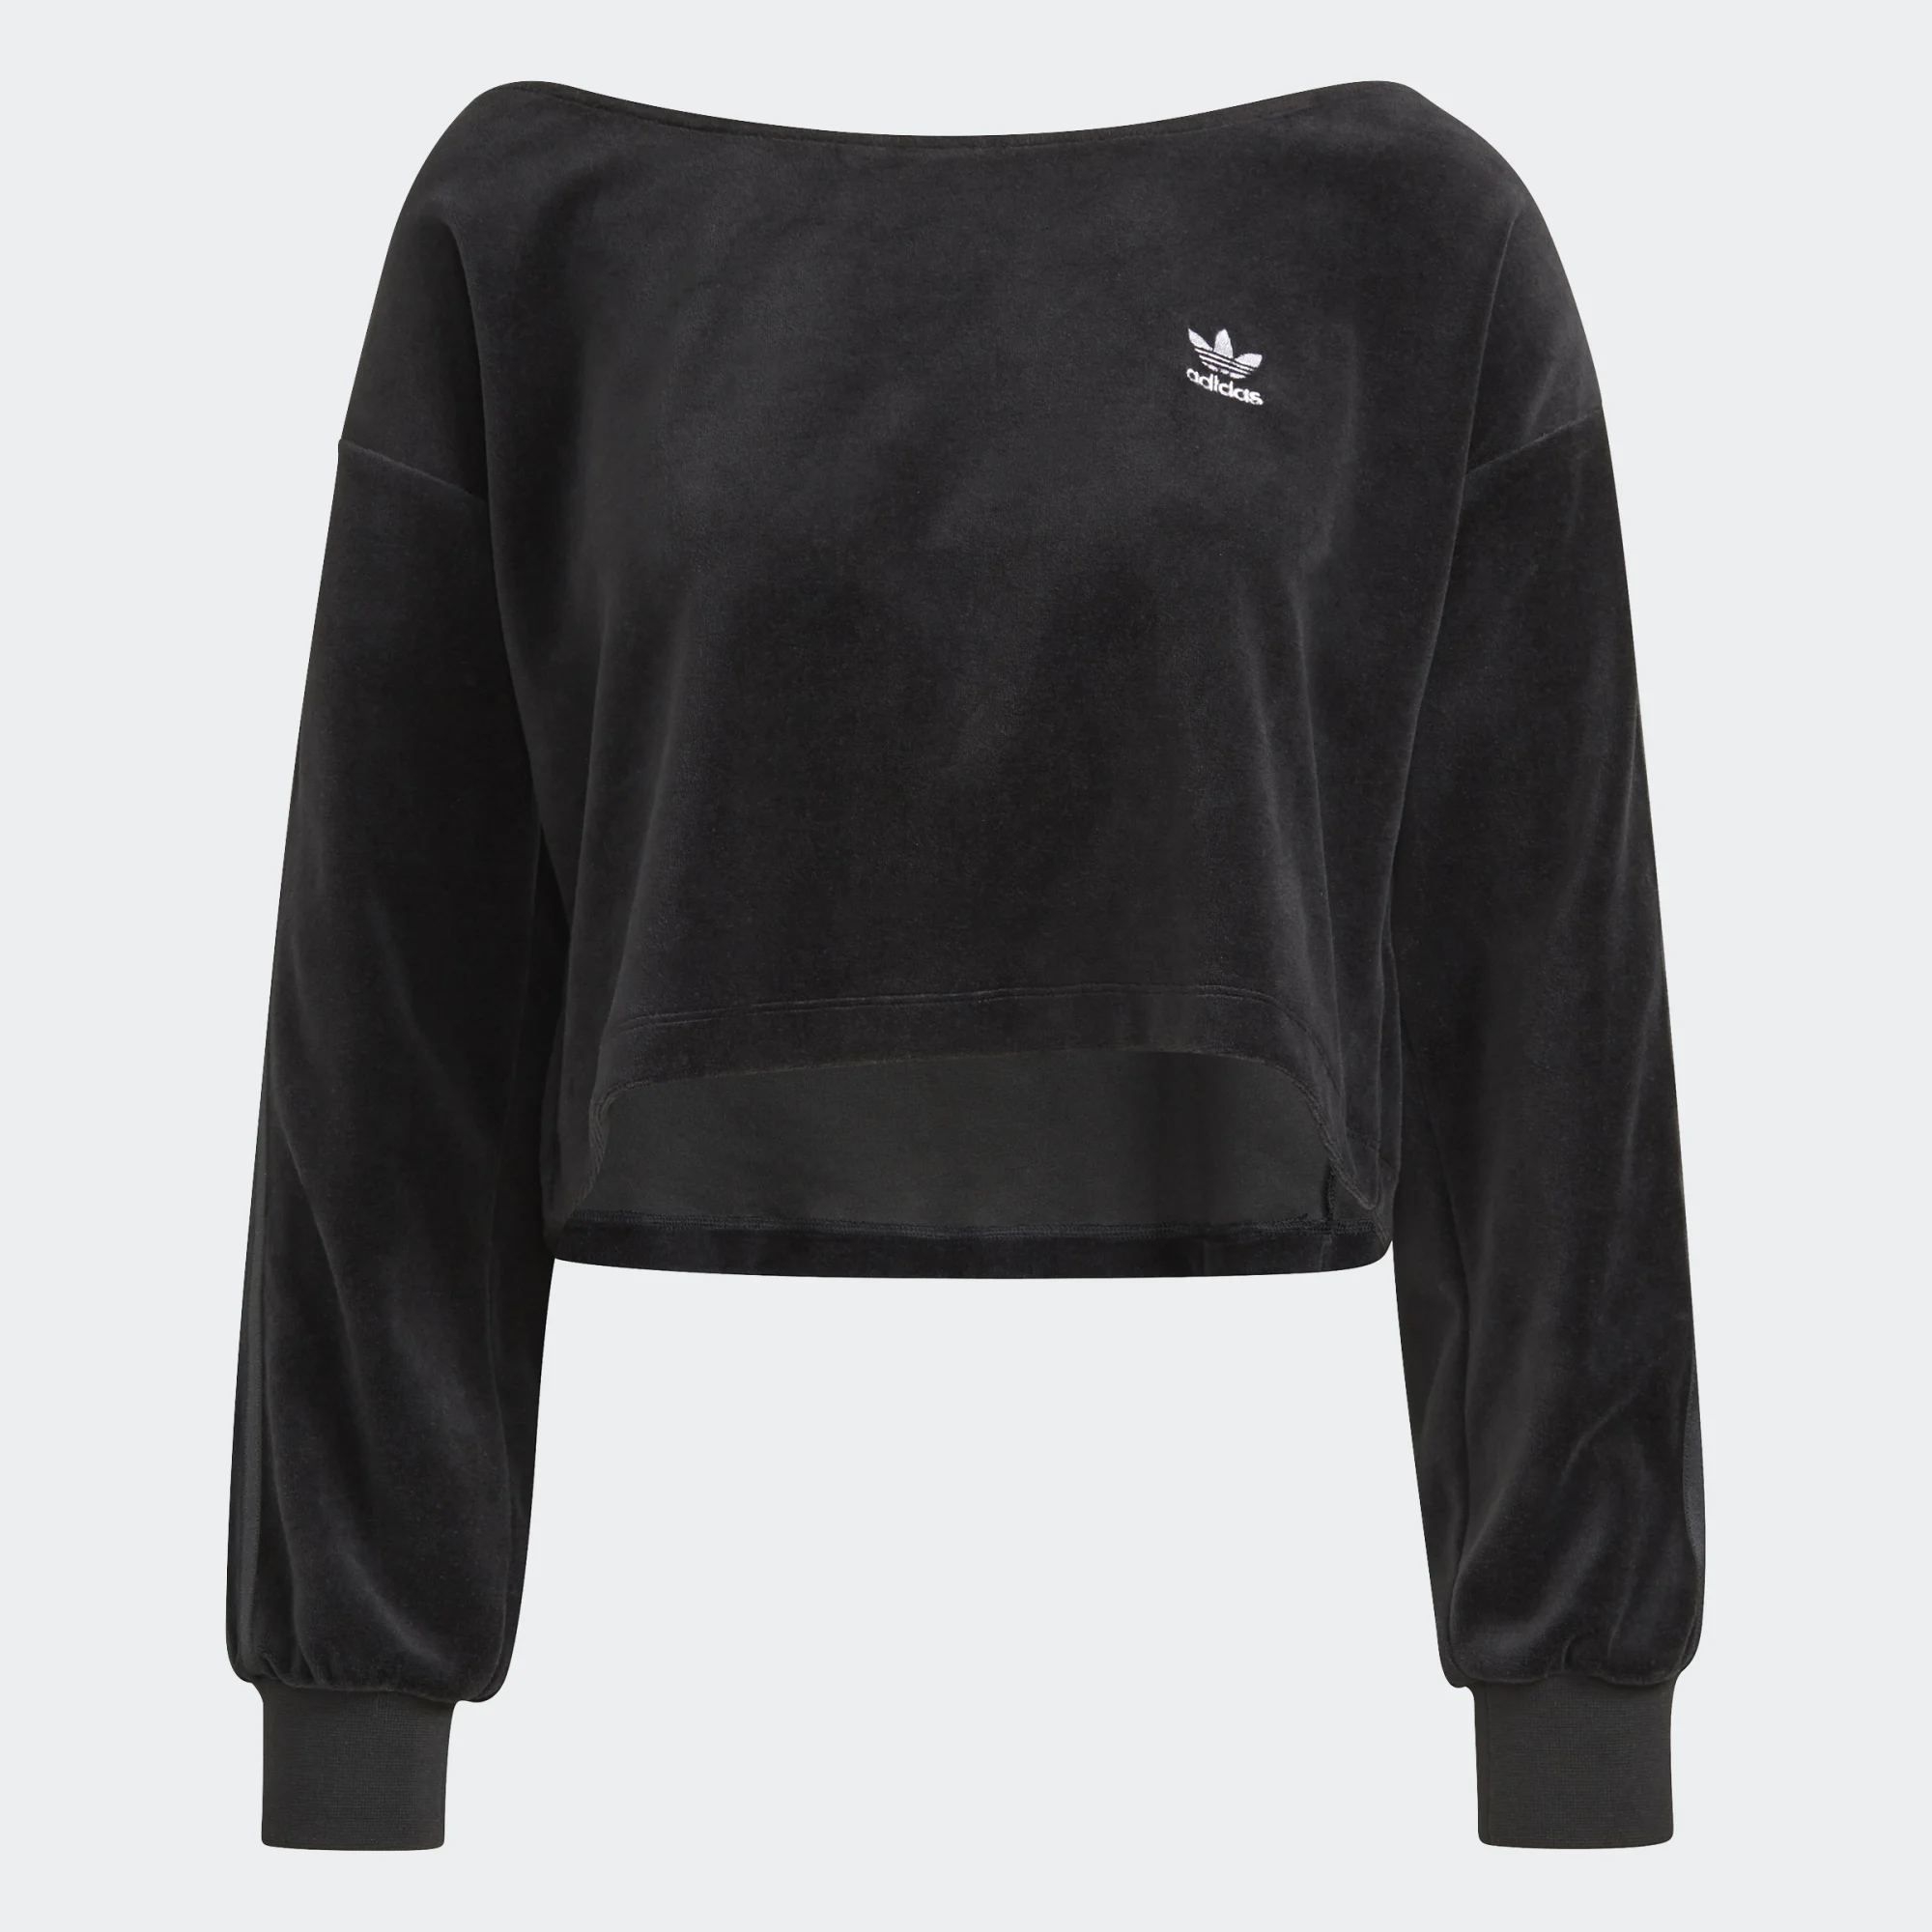 Толстовка Adidas для женщин, H18840, black, размер 38